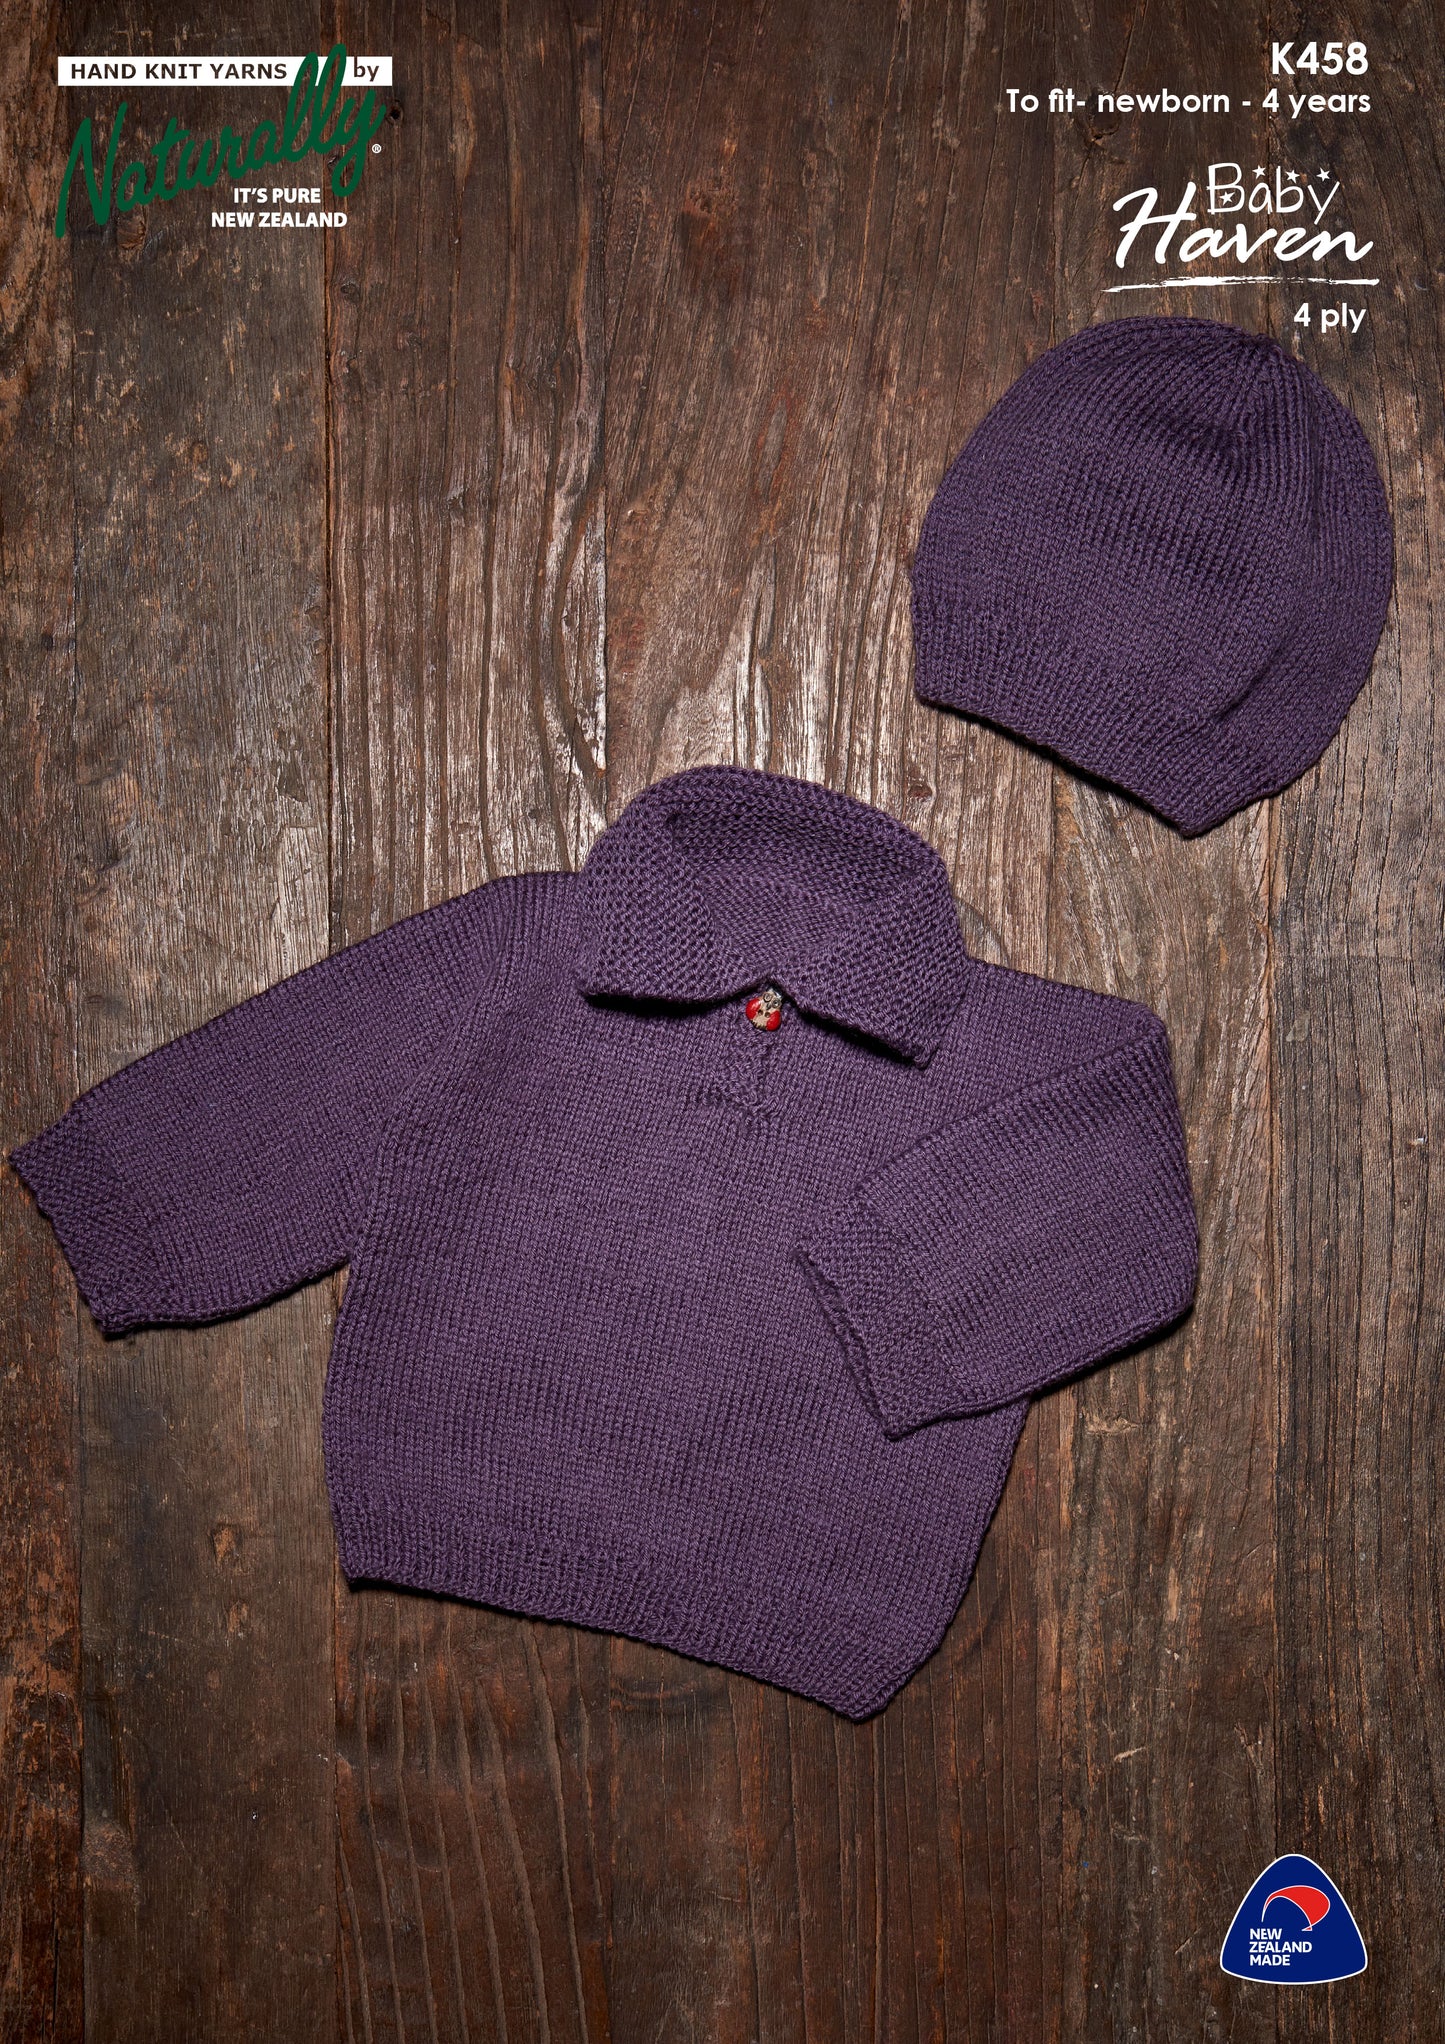 Pattern - Naturally - Newborn to 4 years - Sweater & Hat K458